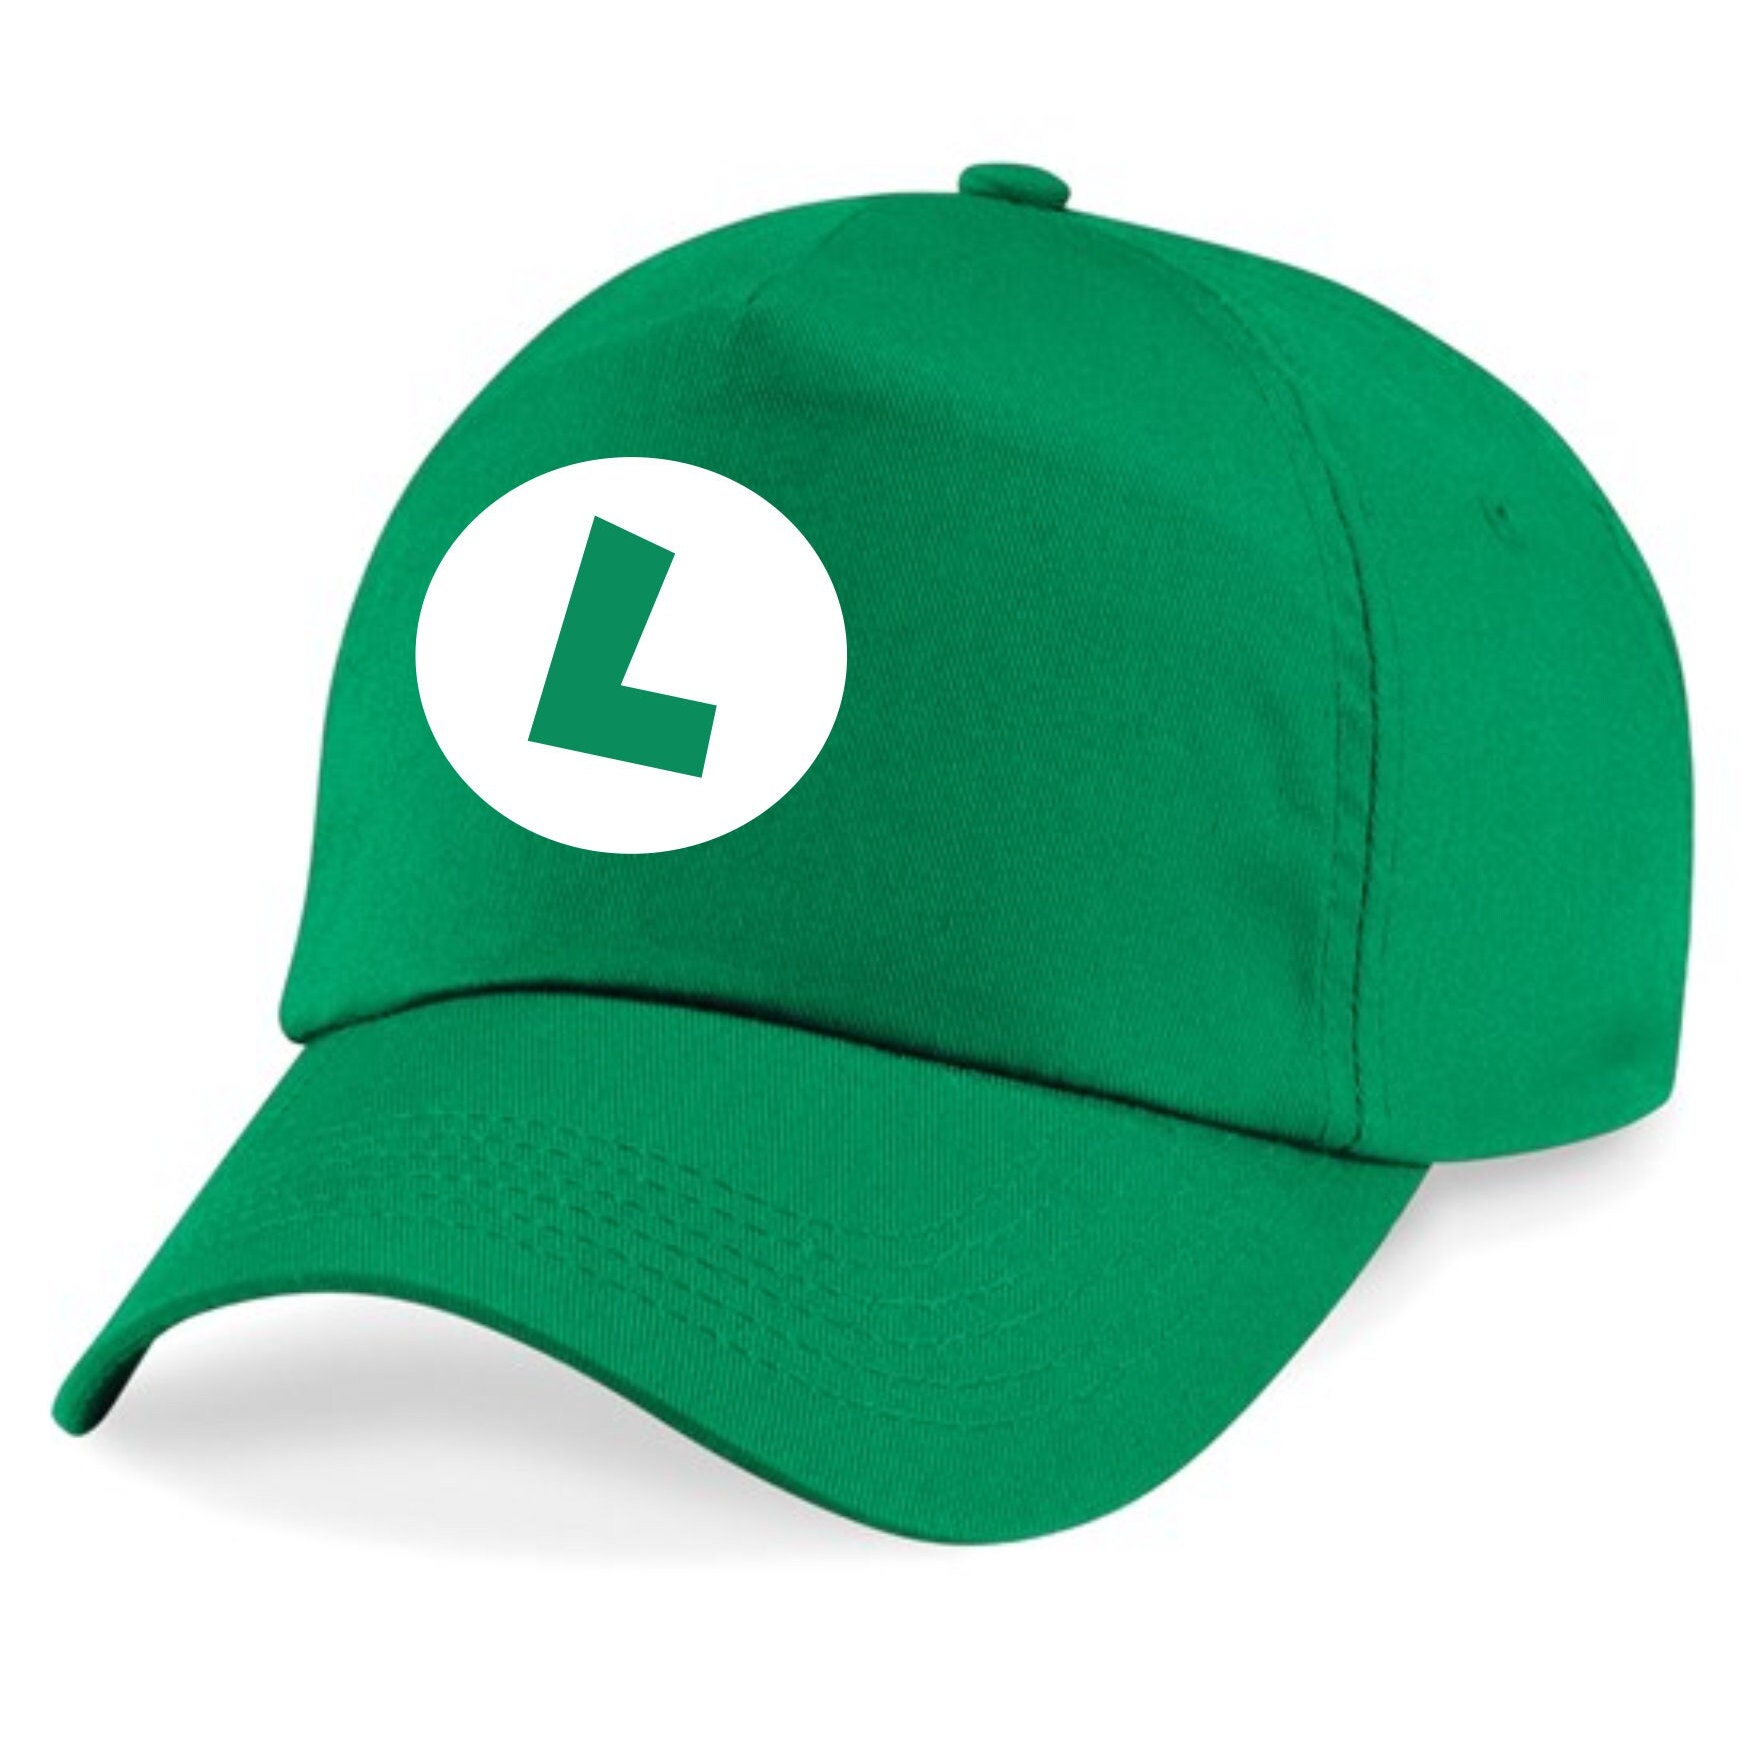 Luigi Cap - Nintendo Super Mario Bros.